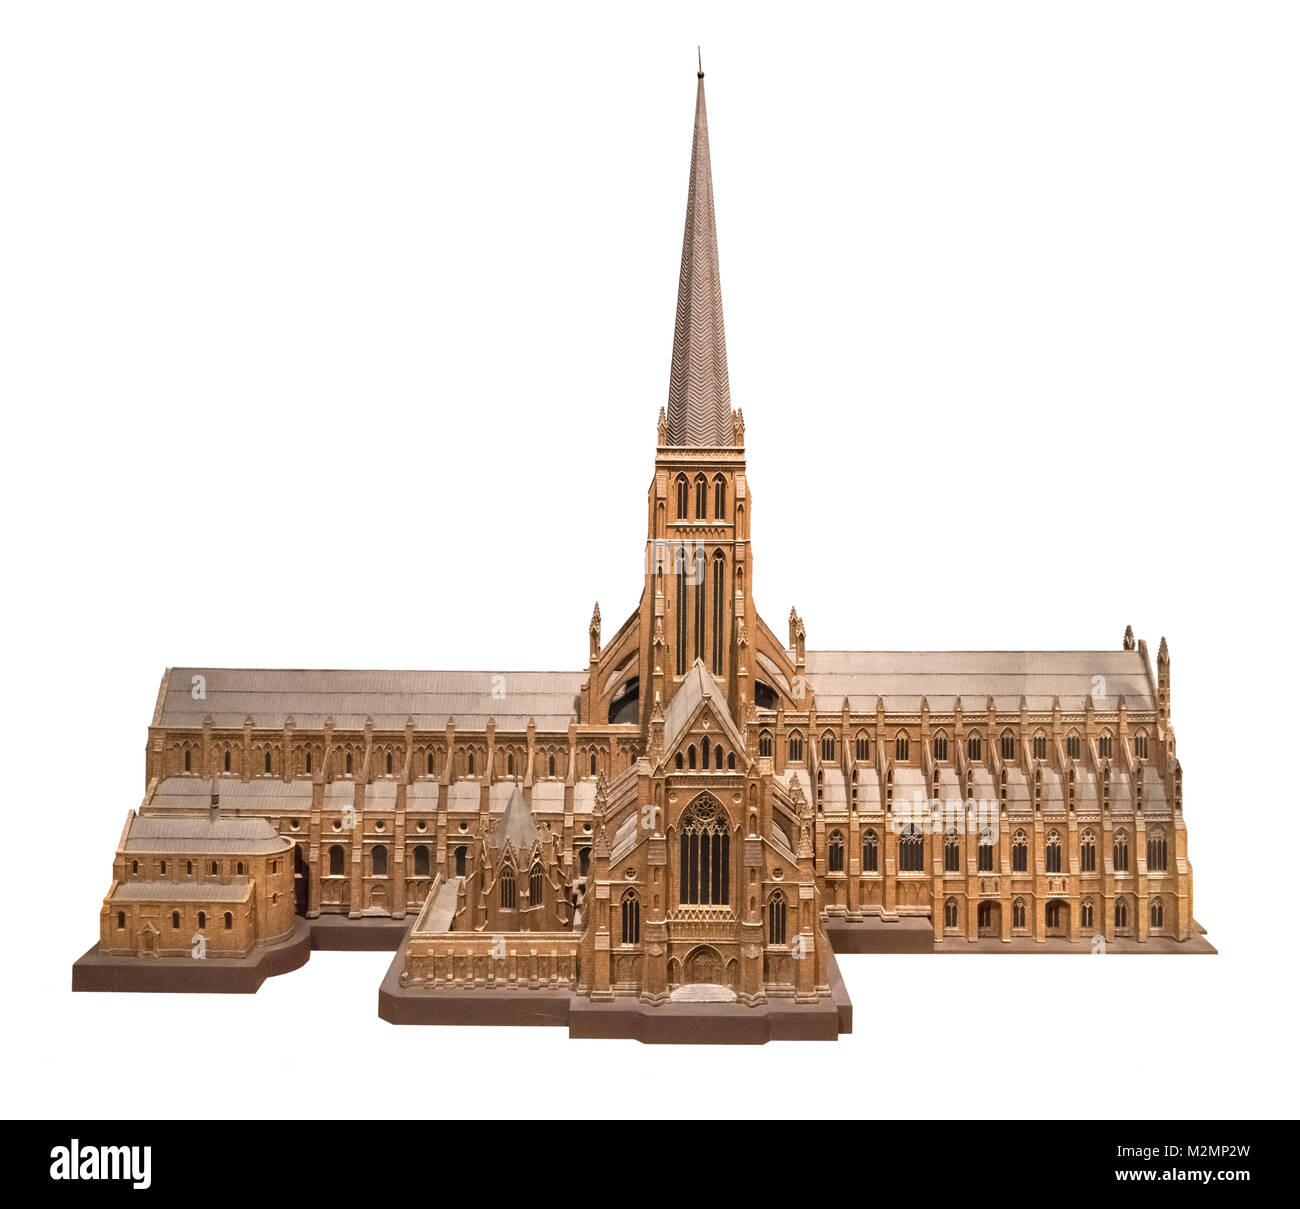 Modell der alten St Paul's Cathedral, London, die in 1320 abgeschlossen wurde und in dem großen Brand von London zerstört im Jahre 1666 (der Turm wurde im Jahr 1561 durch einen Blitzeinschlag zerstört), Museum of London, London, England, Großbritannien Stockfoto